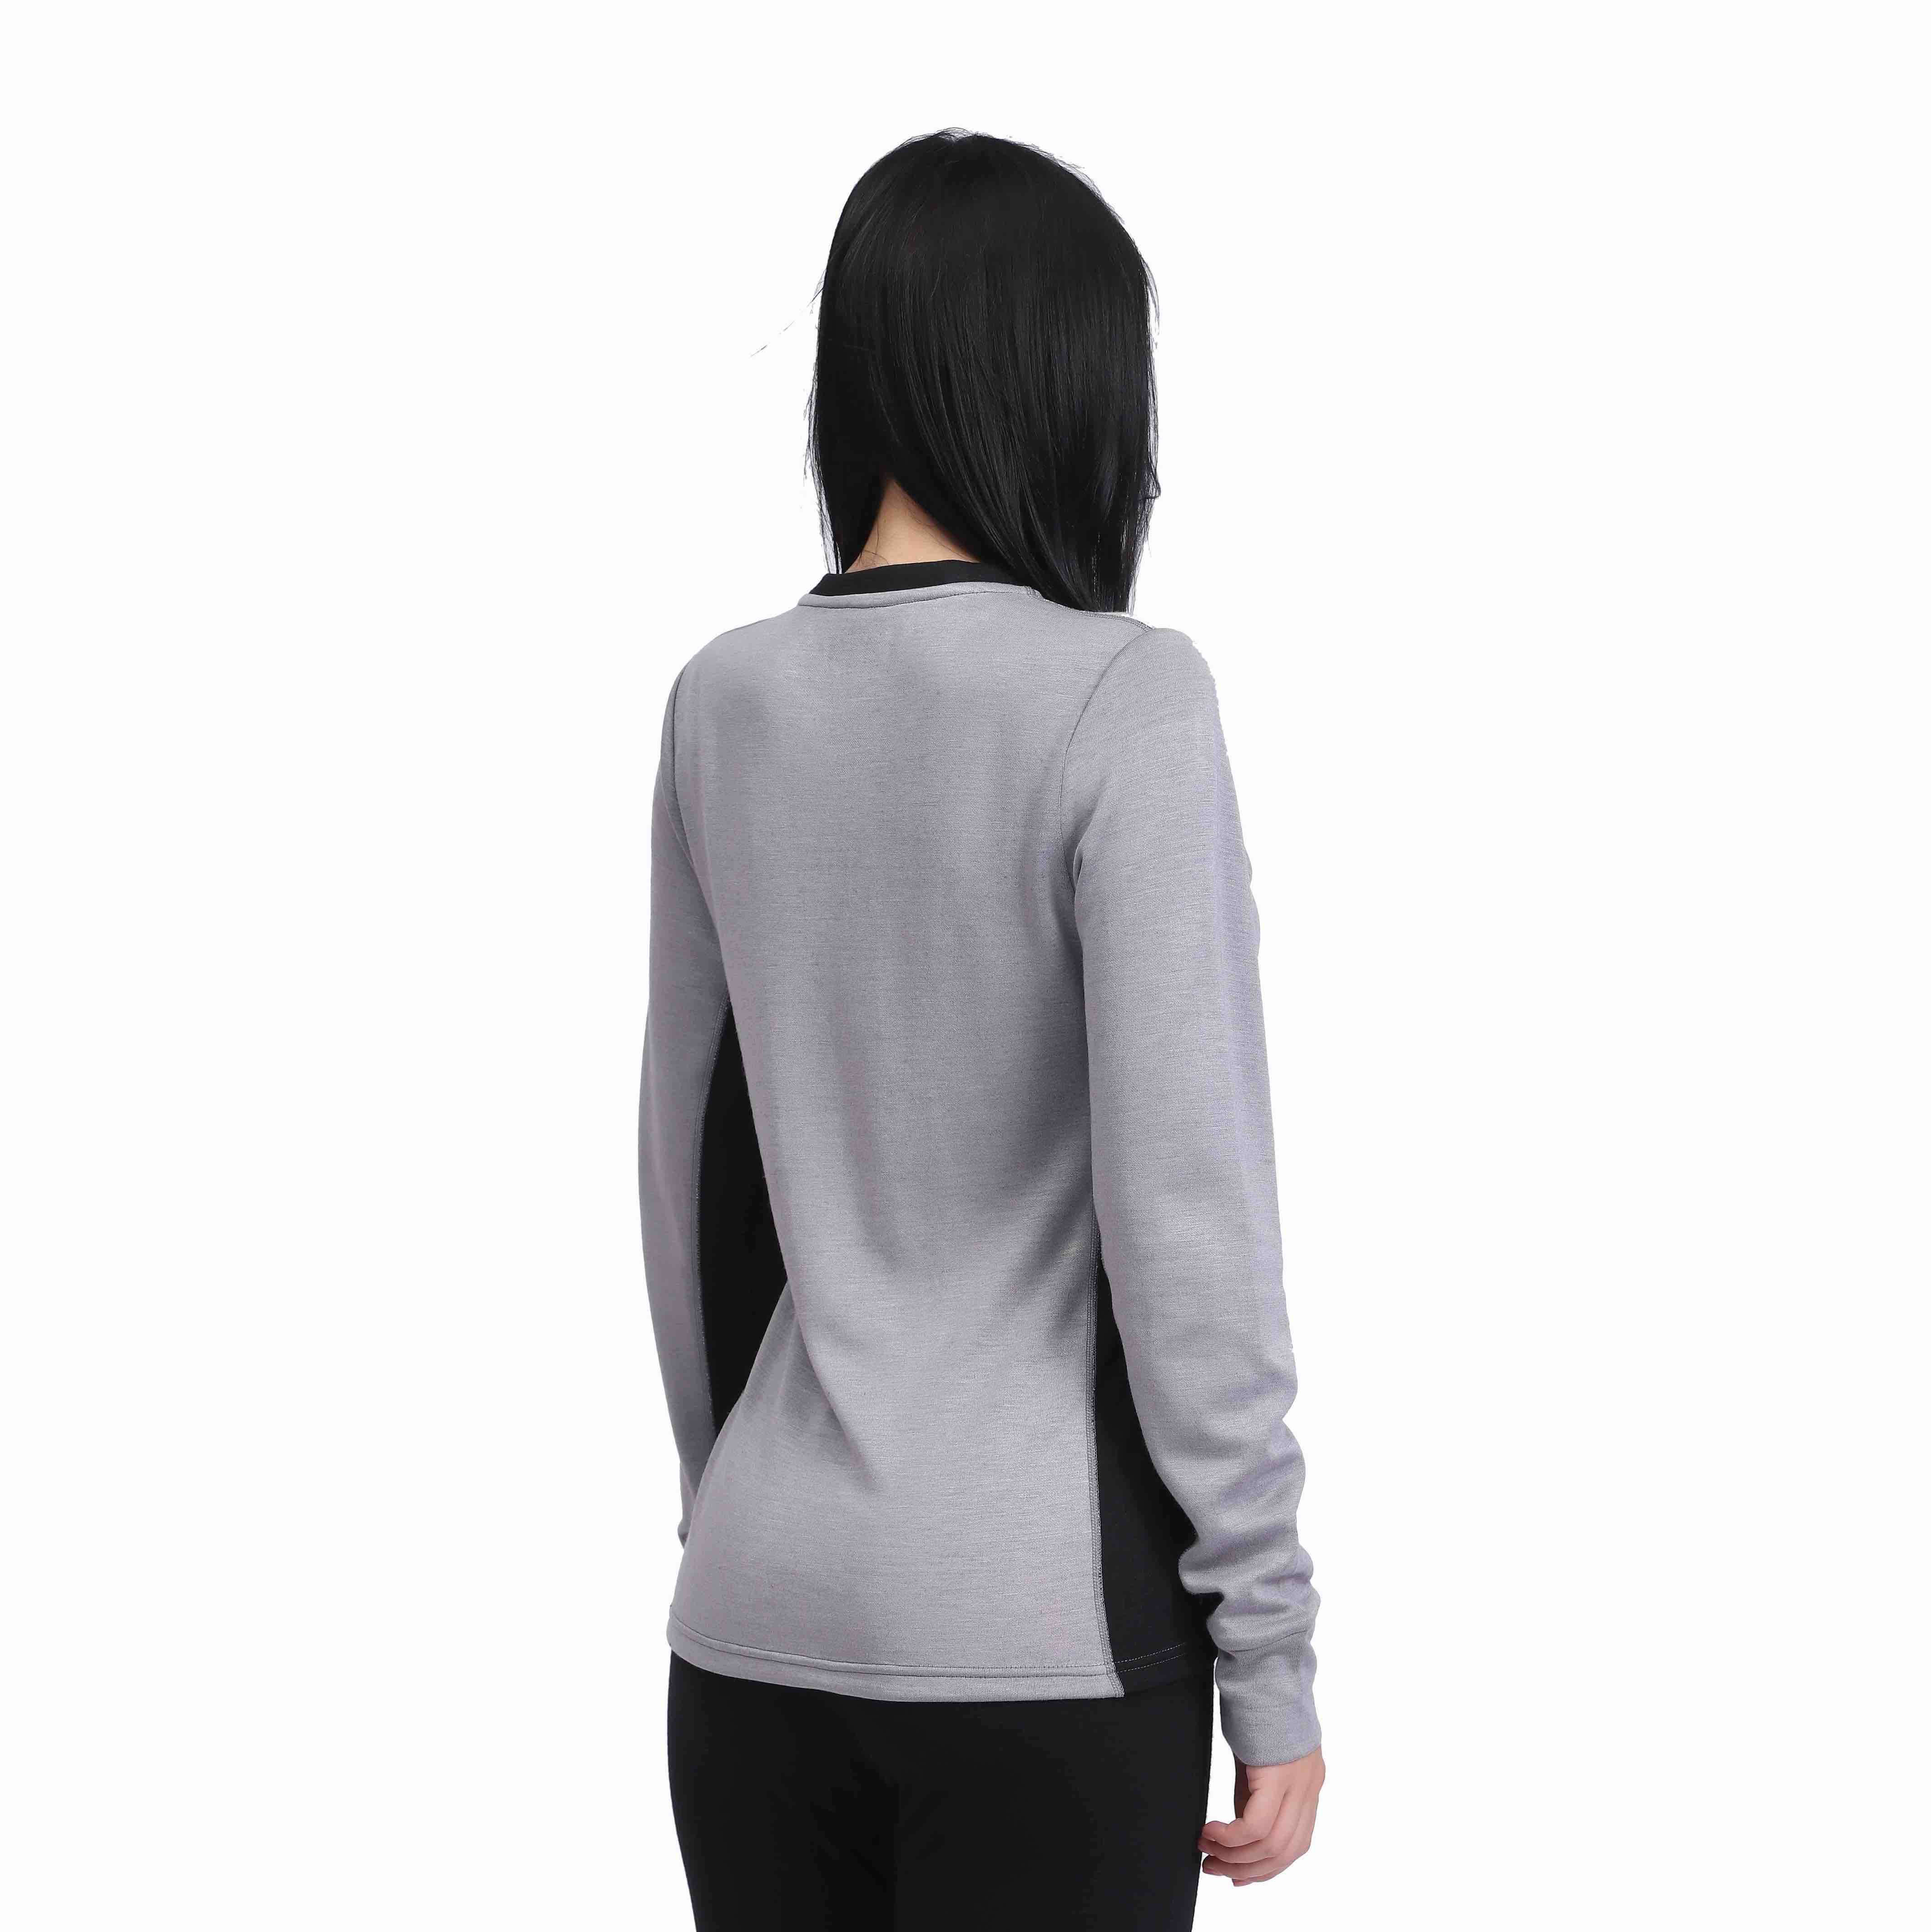 Women Merino Wool thermal underwear Long Sleeve Top